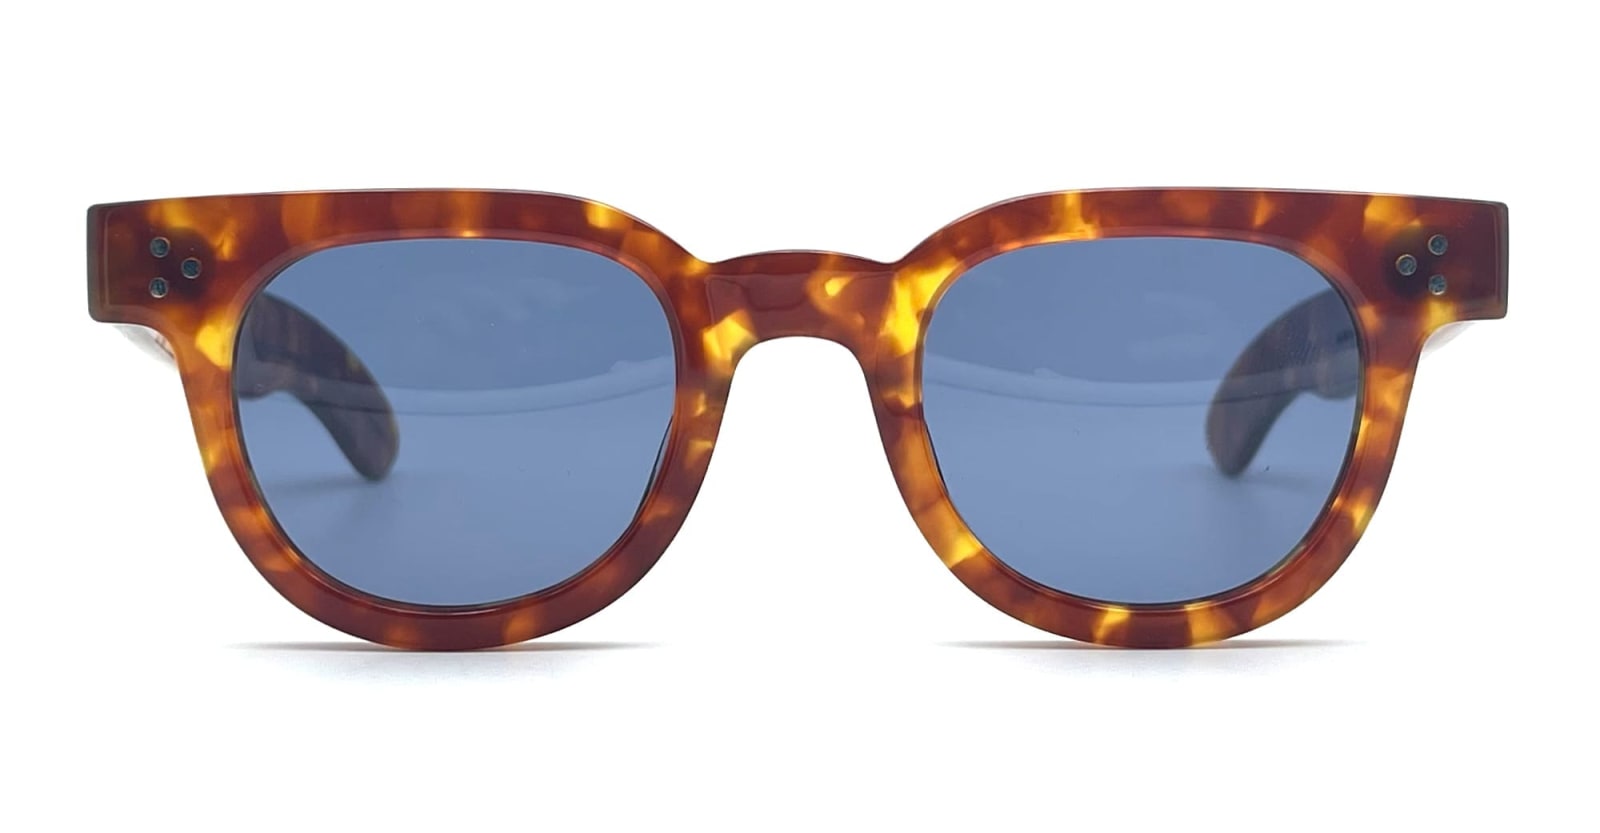 Julius Tart Optical Fdr 46x24 - Light Tortoise / Blue Lens Sunglasses In Brown